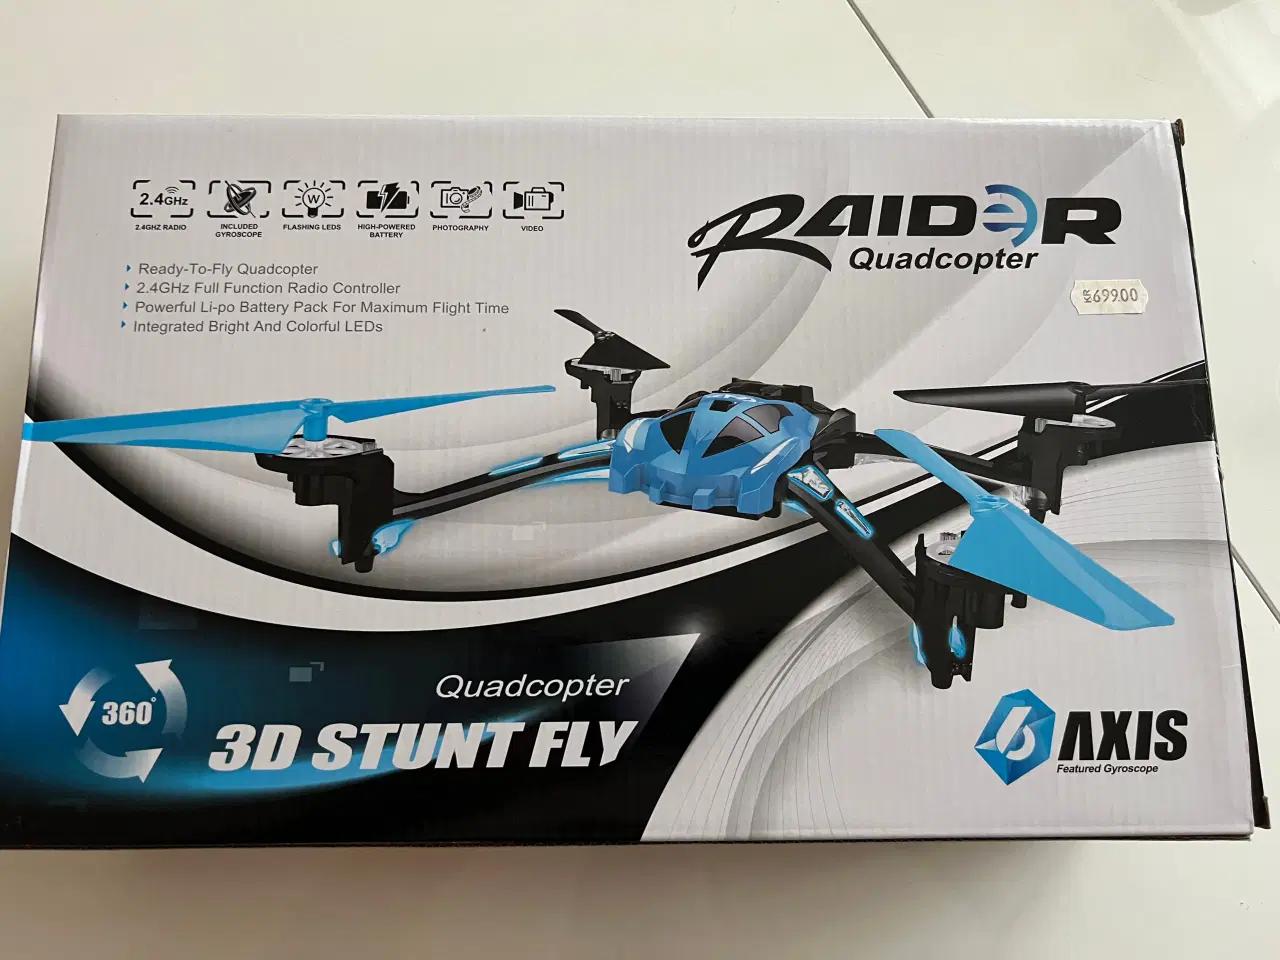 Billede 2 - Quadcopter 3D Stunt fly